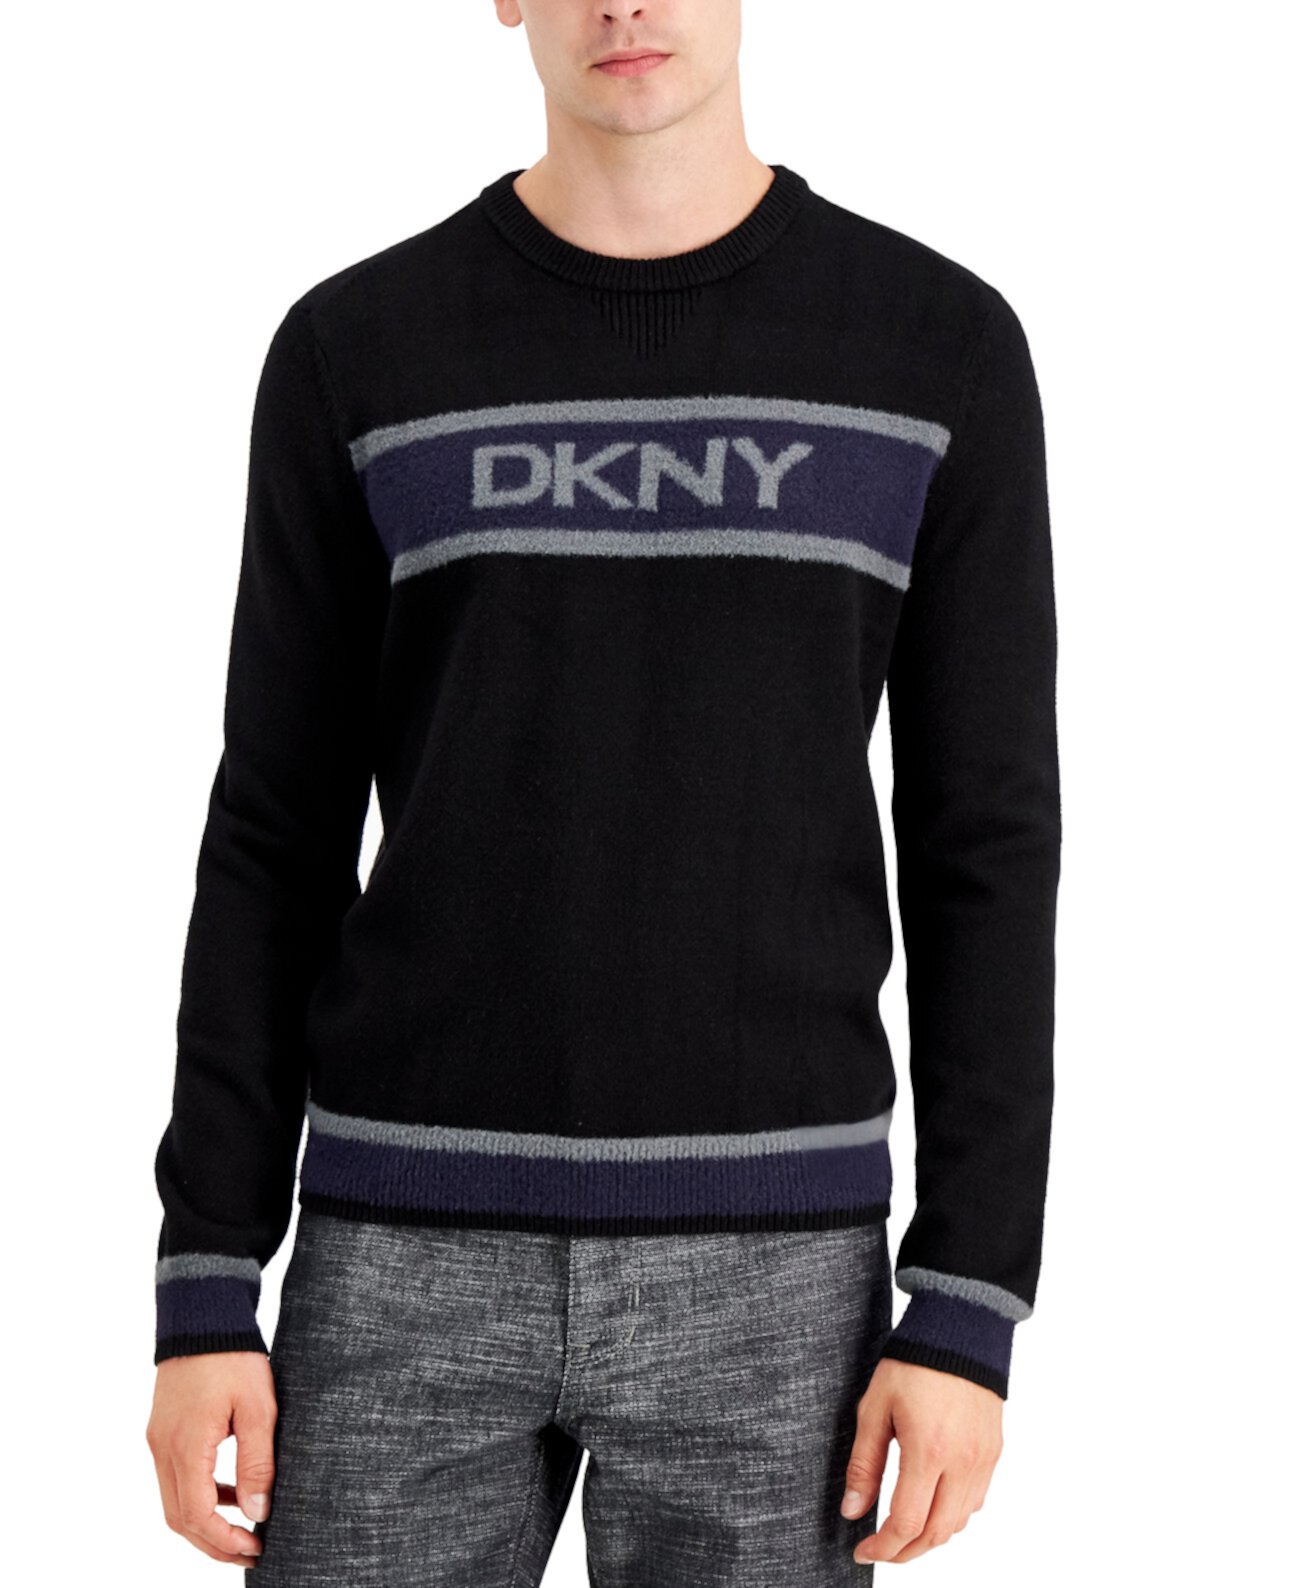 Мужской свитер с логотипом, созданный для Macy's DKNY